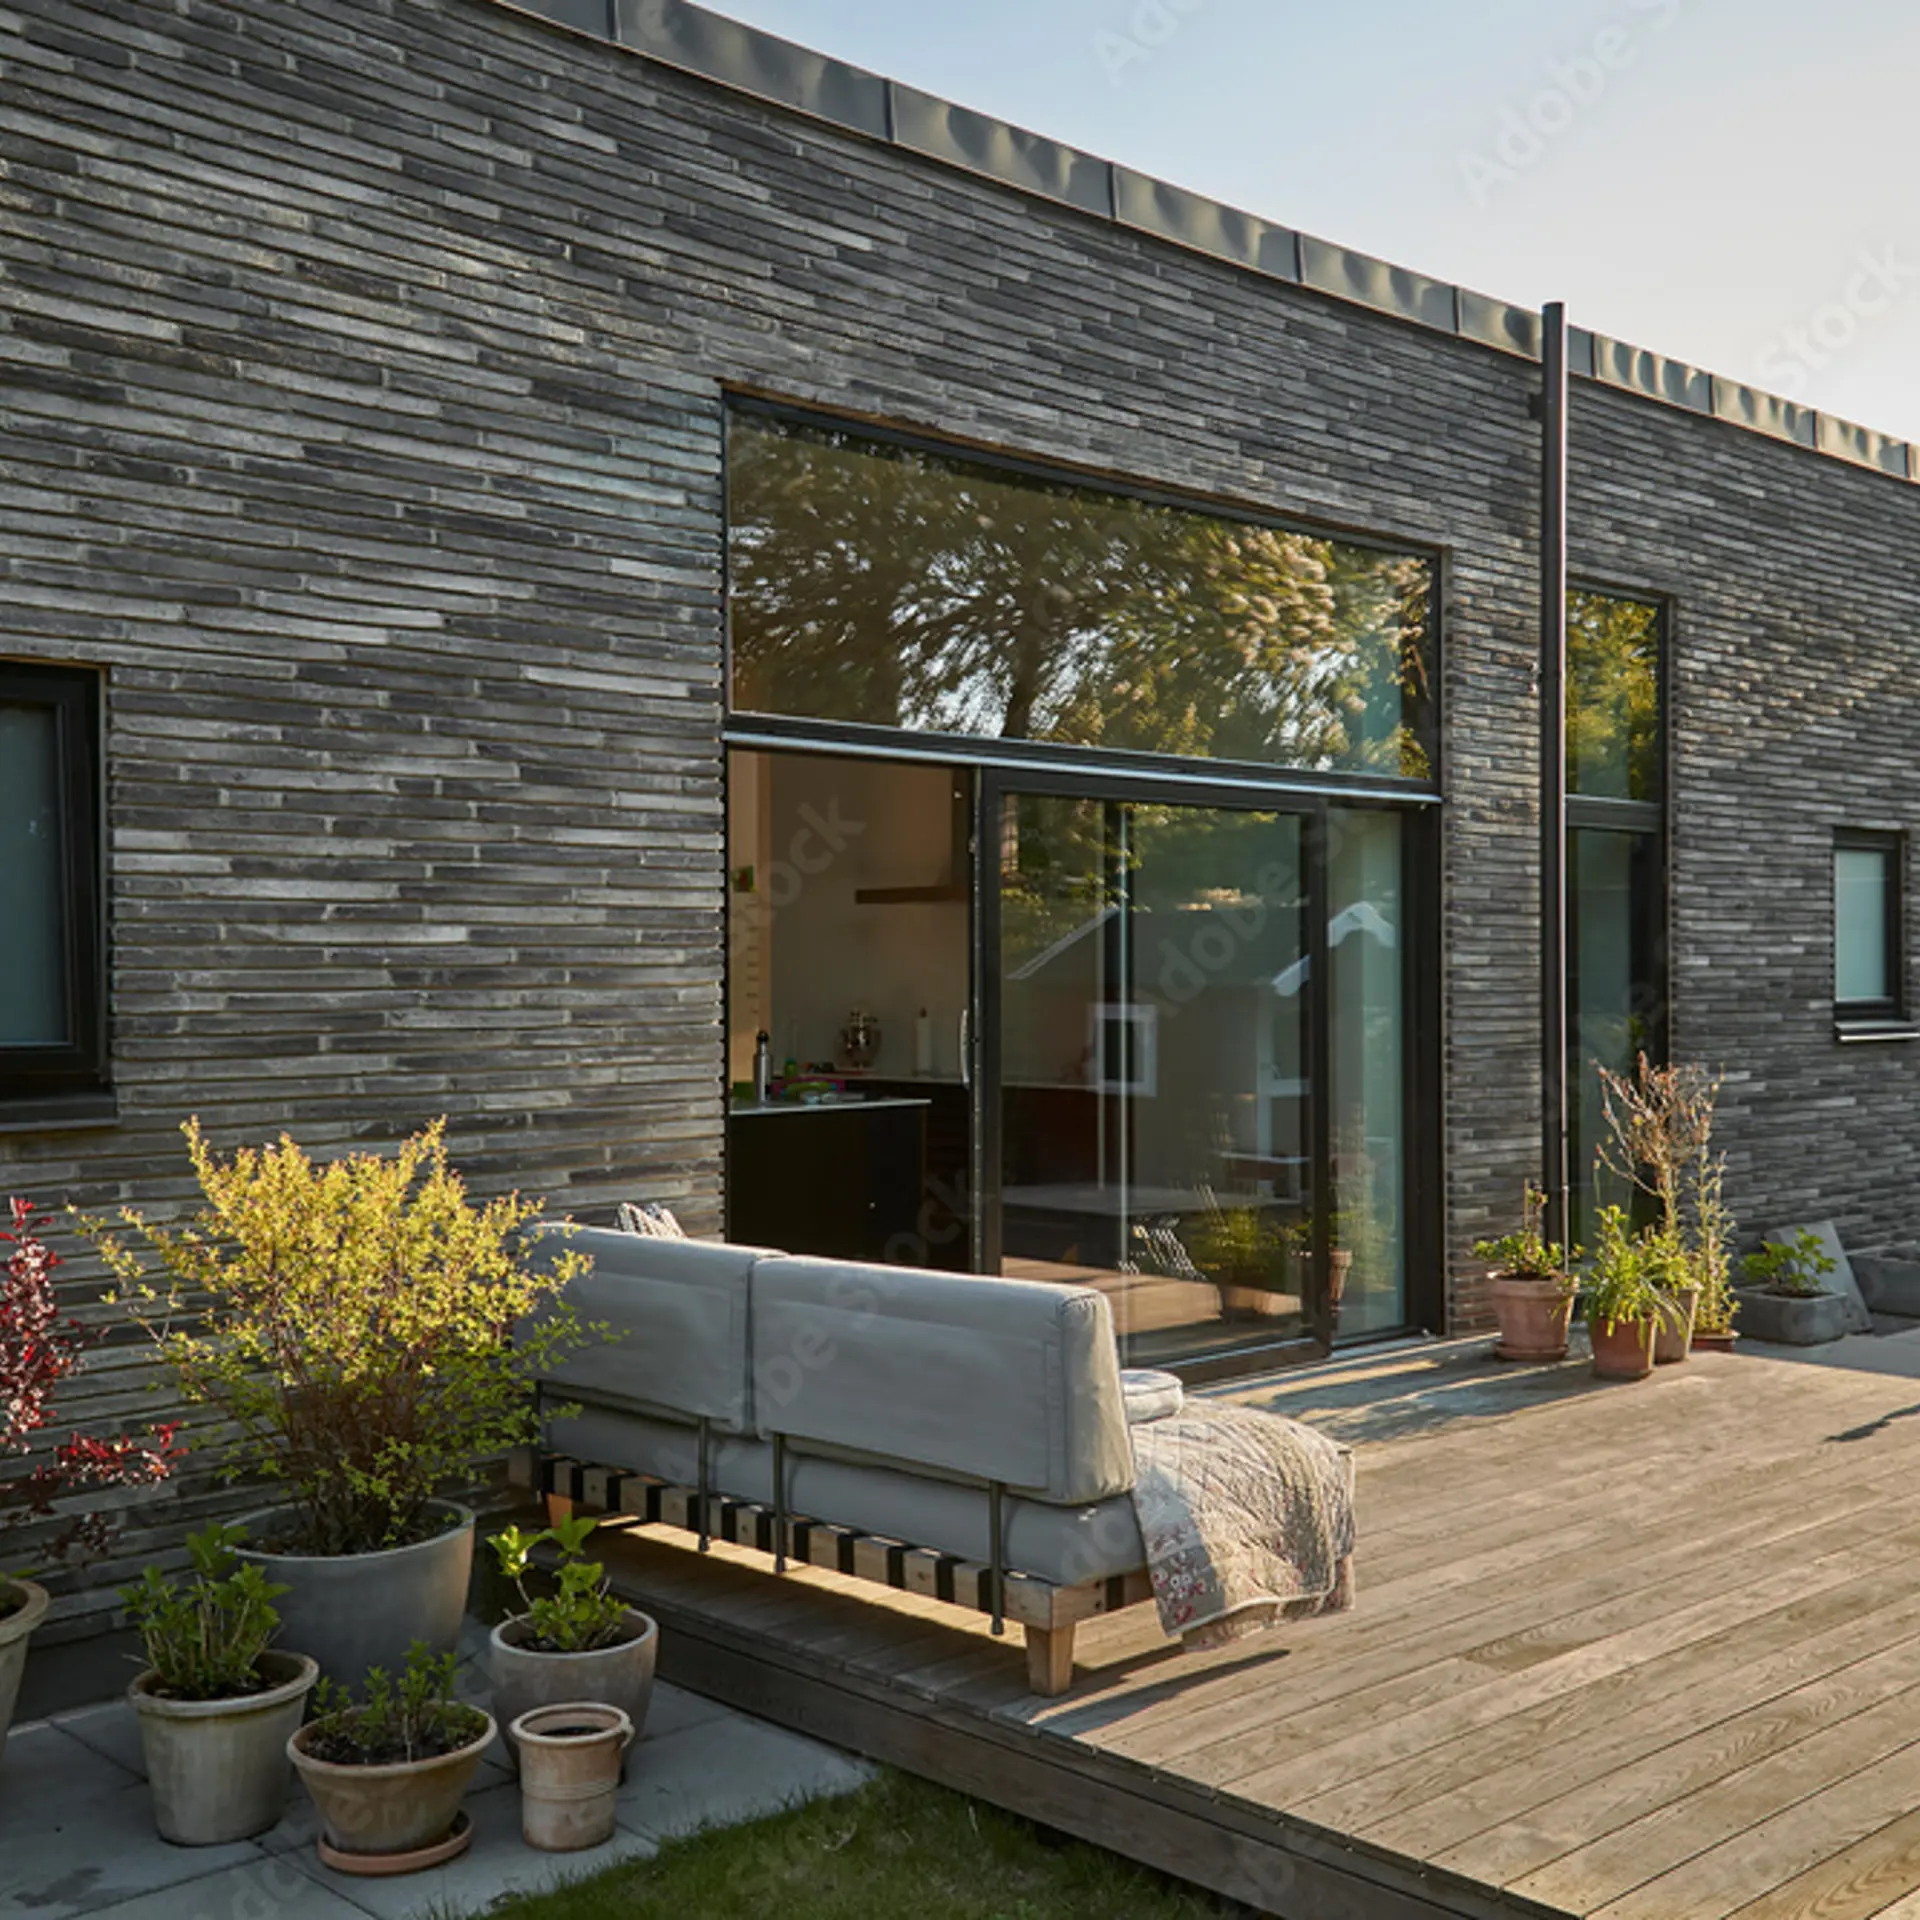 Sort murstenshus set udefra med træterrasse, udendørssofa, blomster i krukker og sorte vinduer.